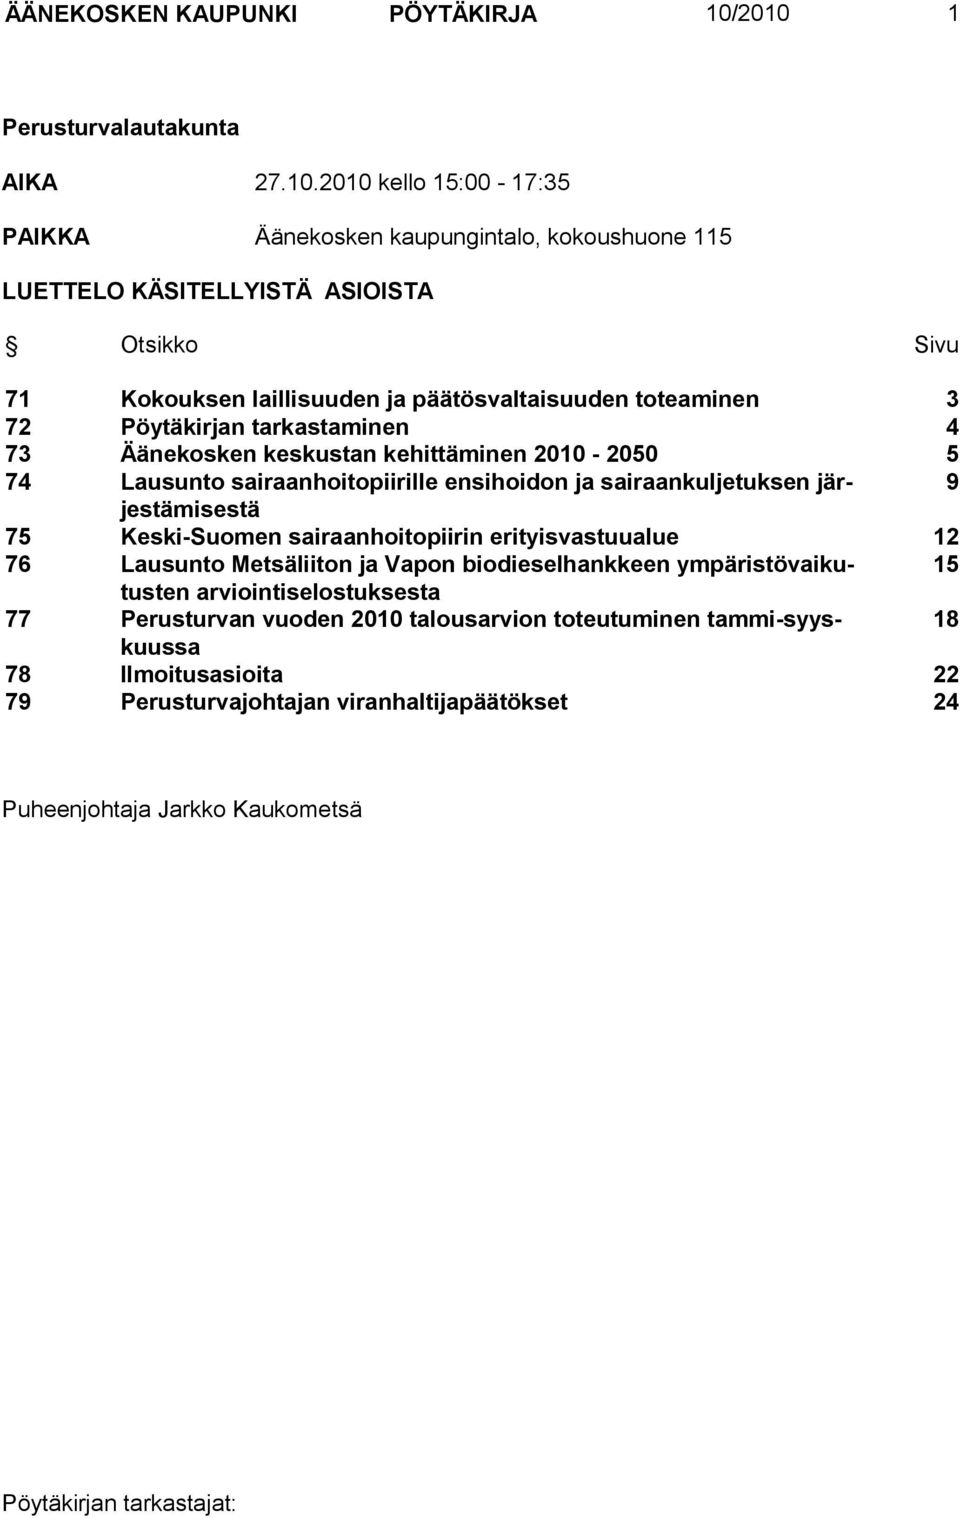 ja päätösvaltaisuuden eaminen 3 72 Pöytäkirjan tarkastaminen 4 73 Äänekosken keskustan kehittäminen 2010-2050 5 74 Lausunto sairaanhoitopiirille ensihoidon ja sairaankuljetuksen